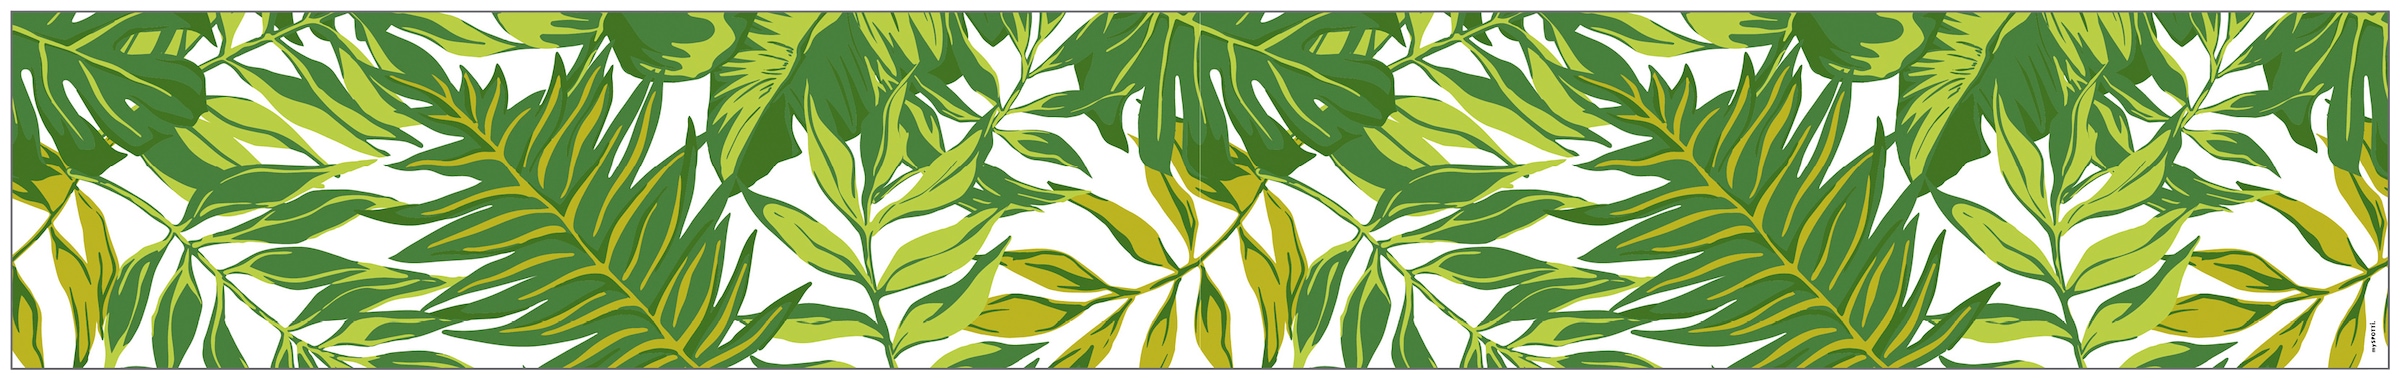 MySpotti Fensterfolie »Look Palm Leaves glattstatisch 200 kaufen jetzt x statisch green«, 30 cm, haftend haftend, halbtransparent